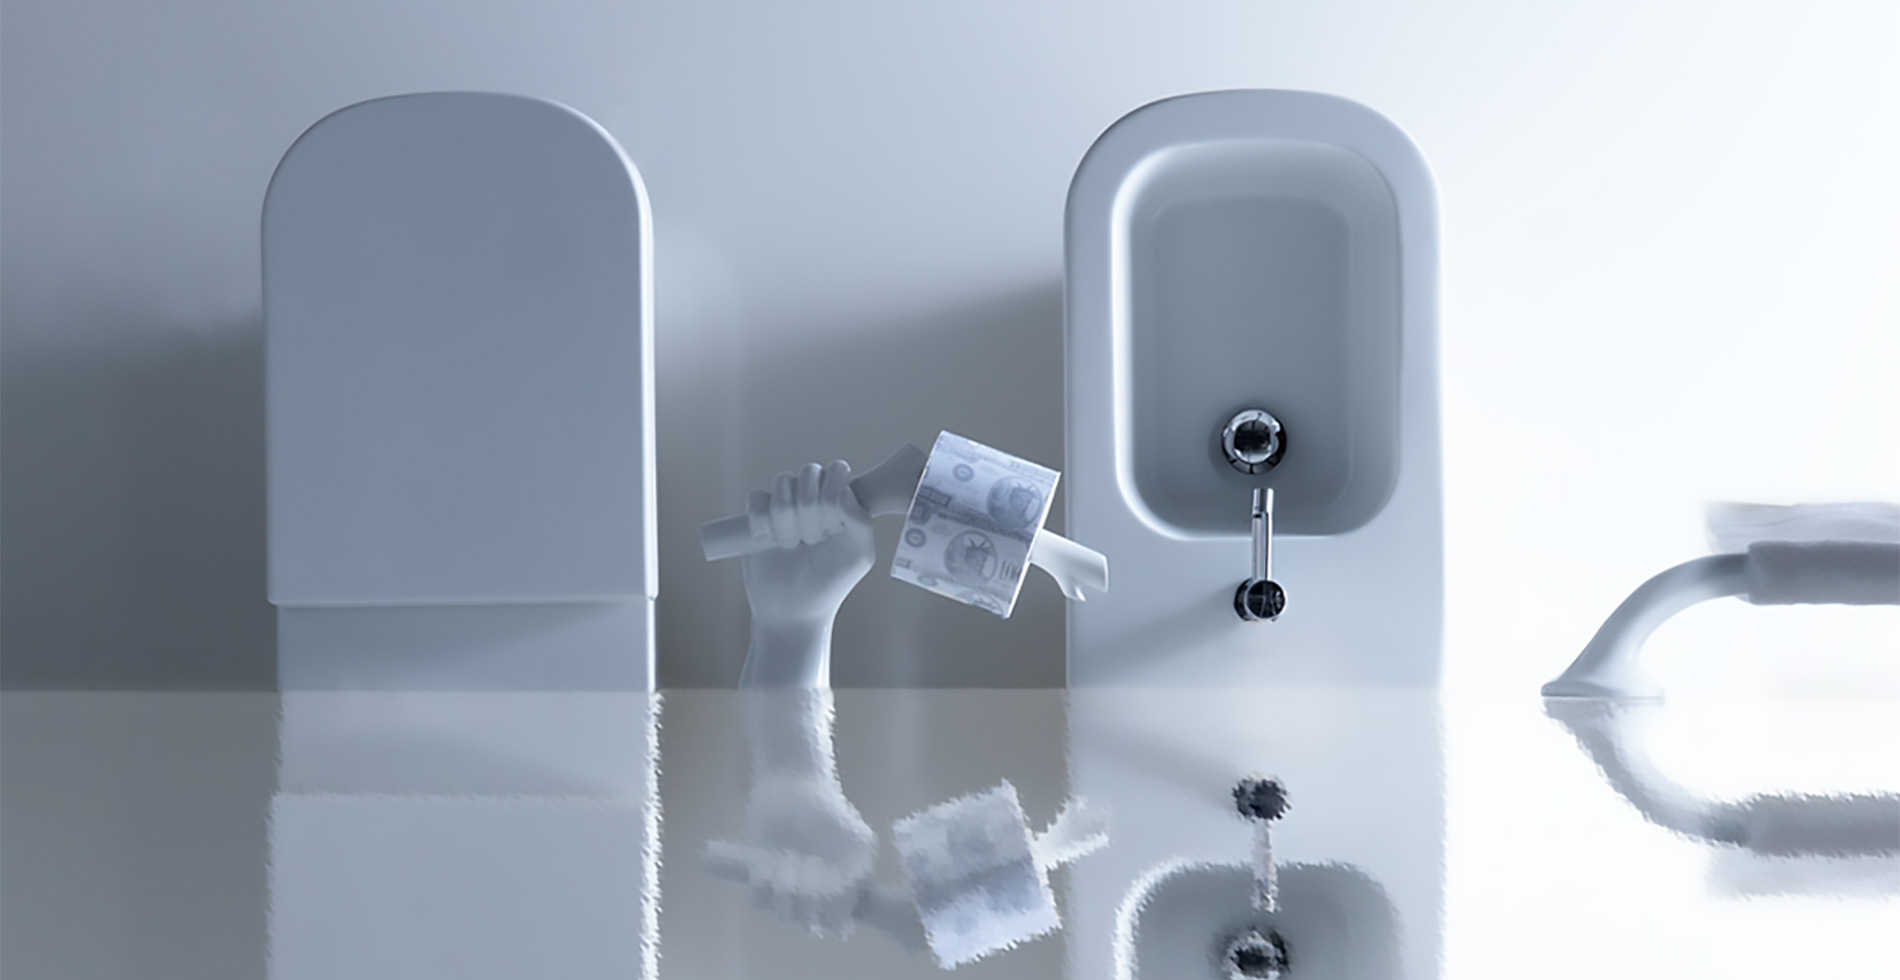 MEG11 Portarotolo di ceramica | arredo bagno inspirato nella mano rama natura | Design by Antonio Pascale per Galassia